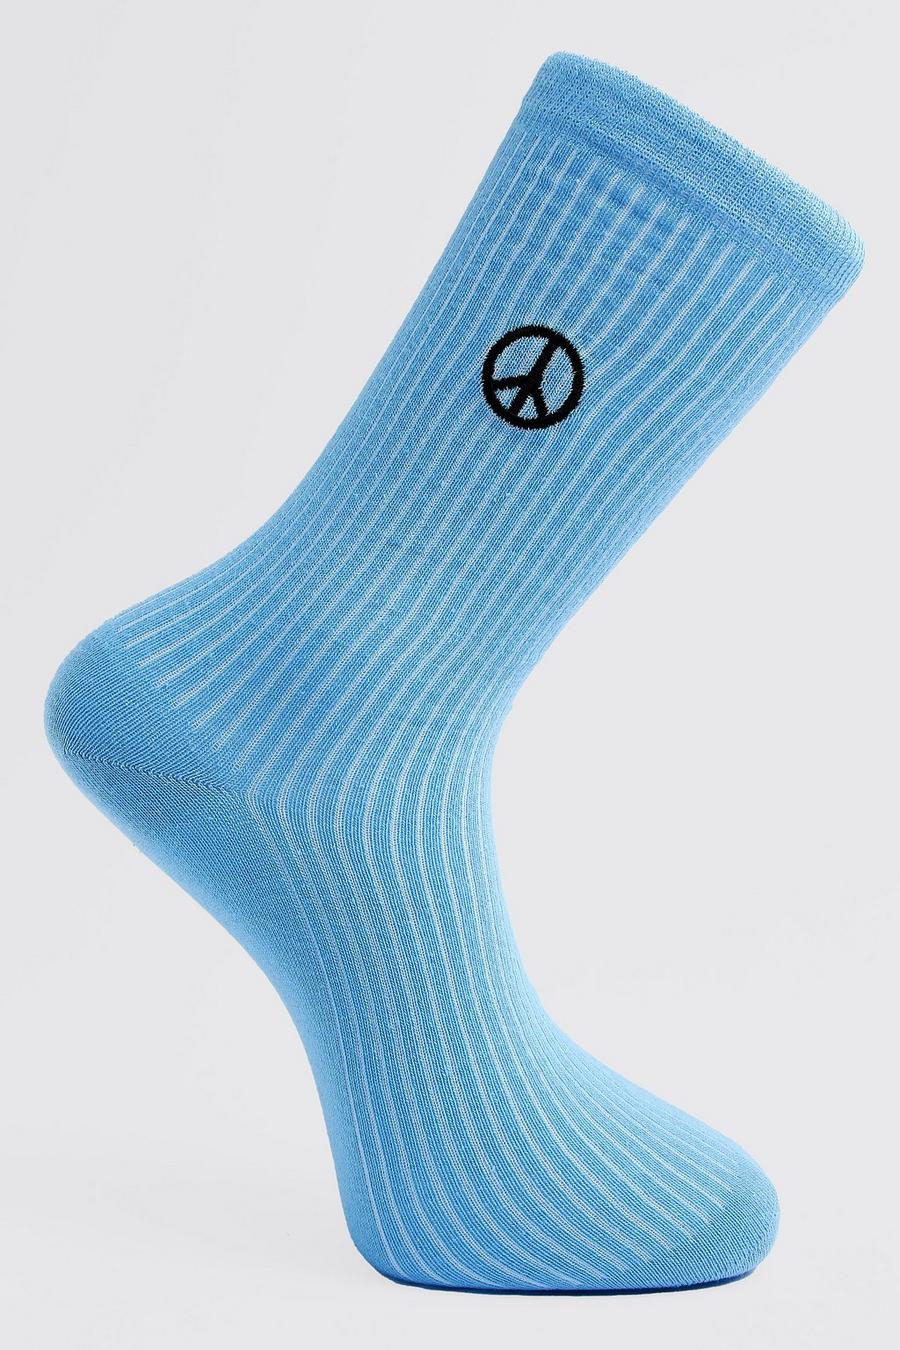 Calcetines con bordado del símbolo de la paz, Blue azul image number 1